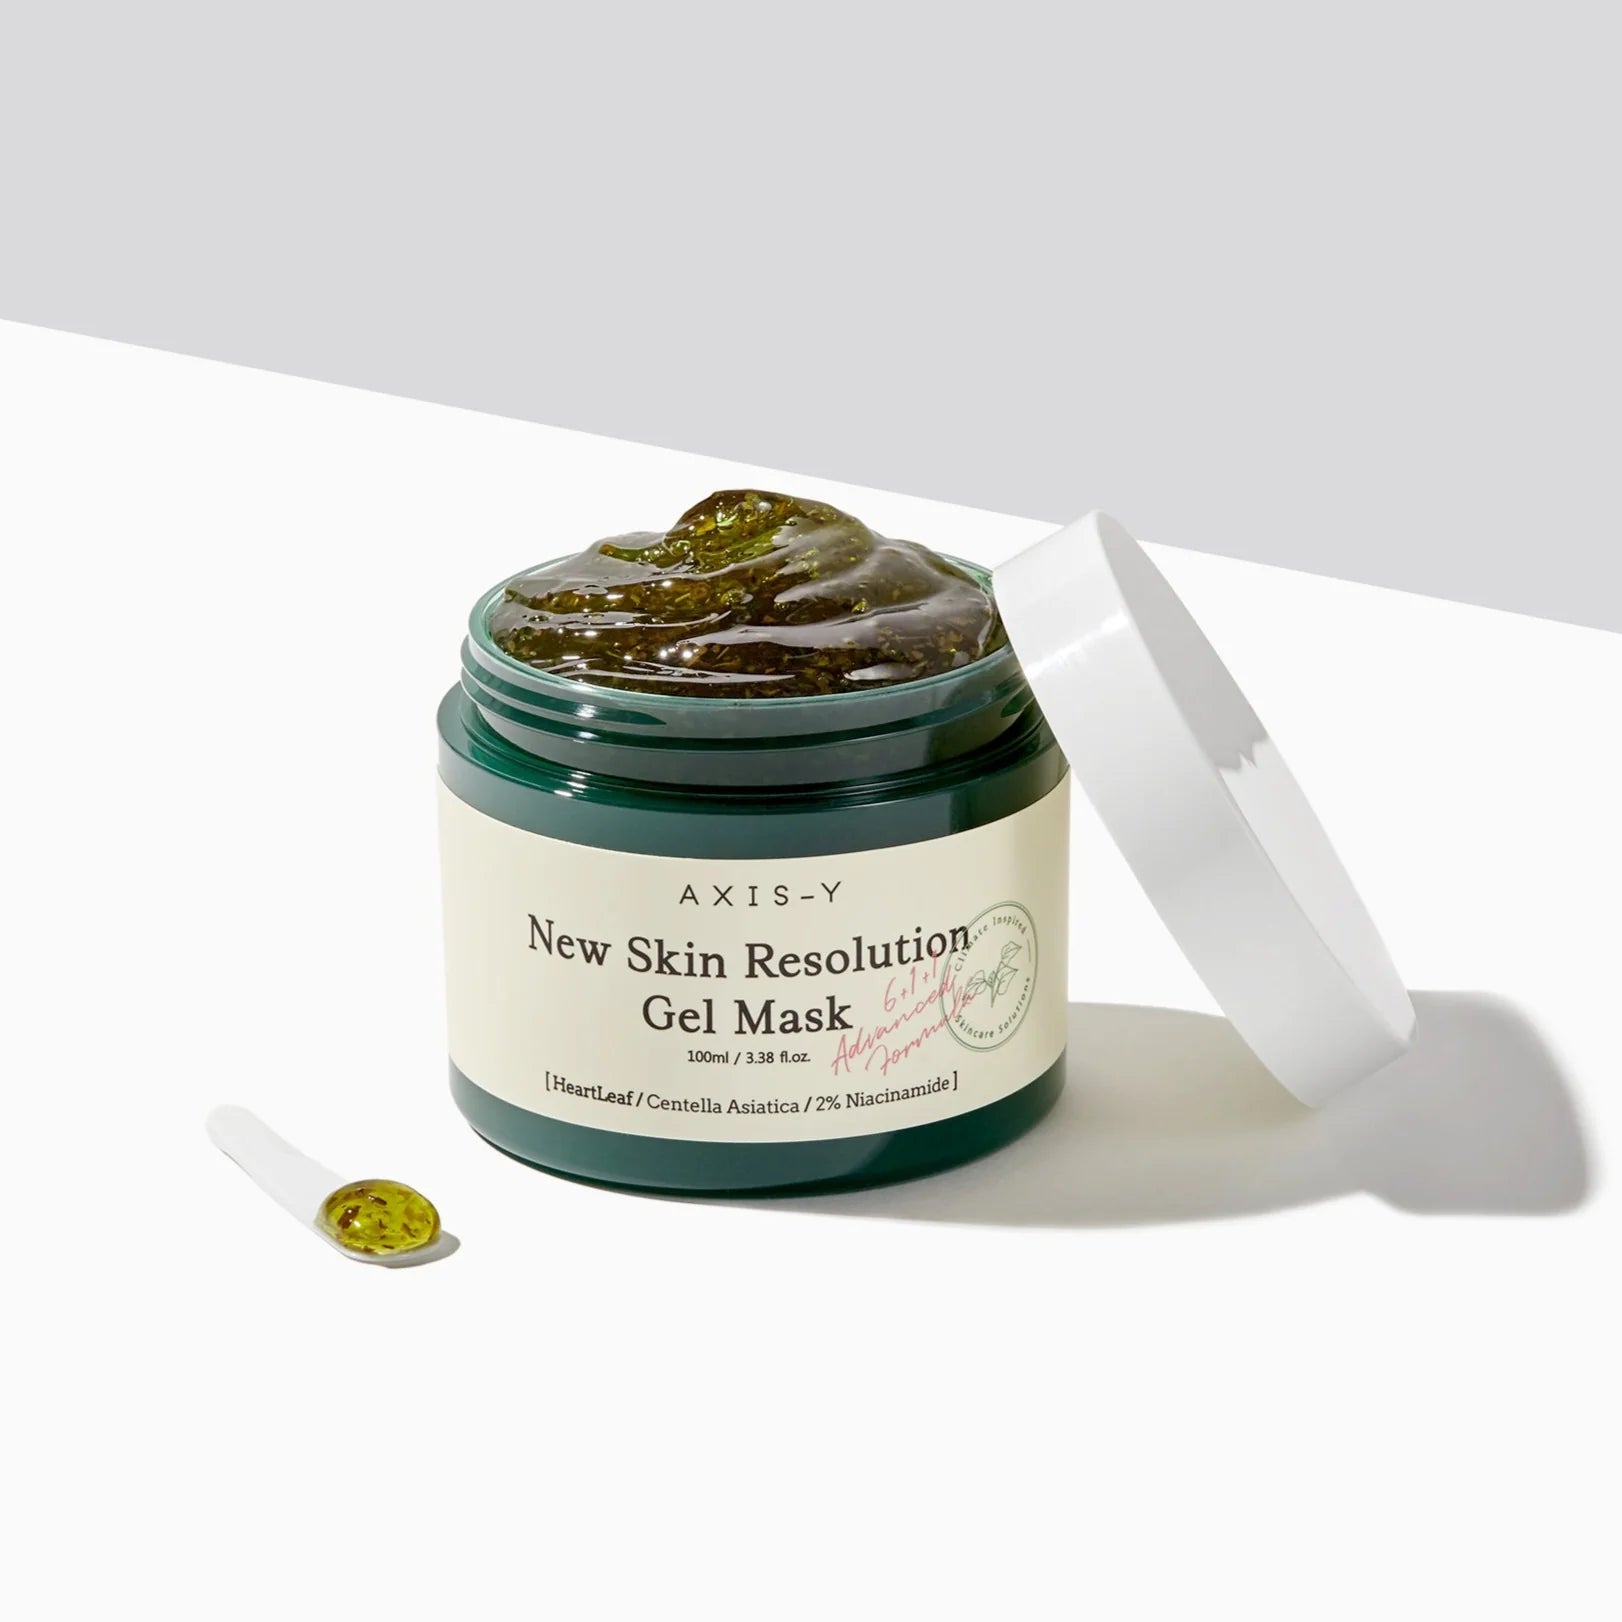 Axis-y mugwort New Skin Resolution Gel Mask 100ml